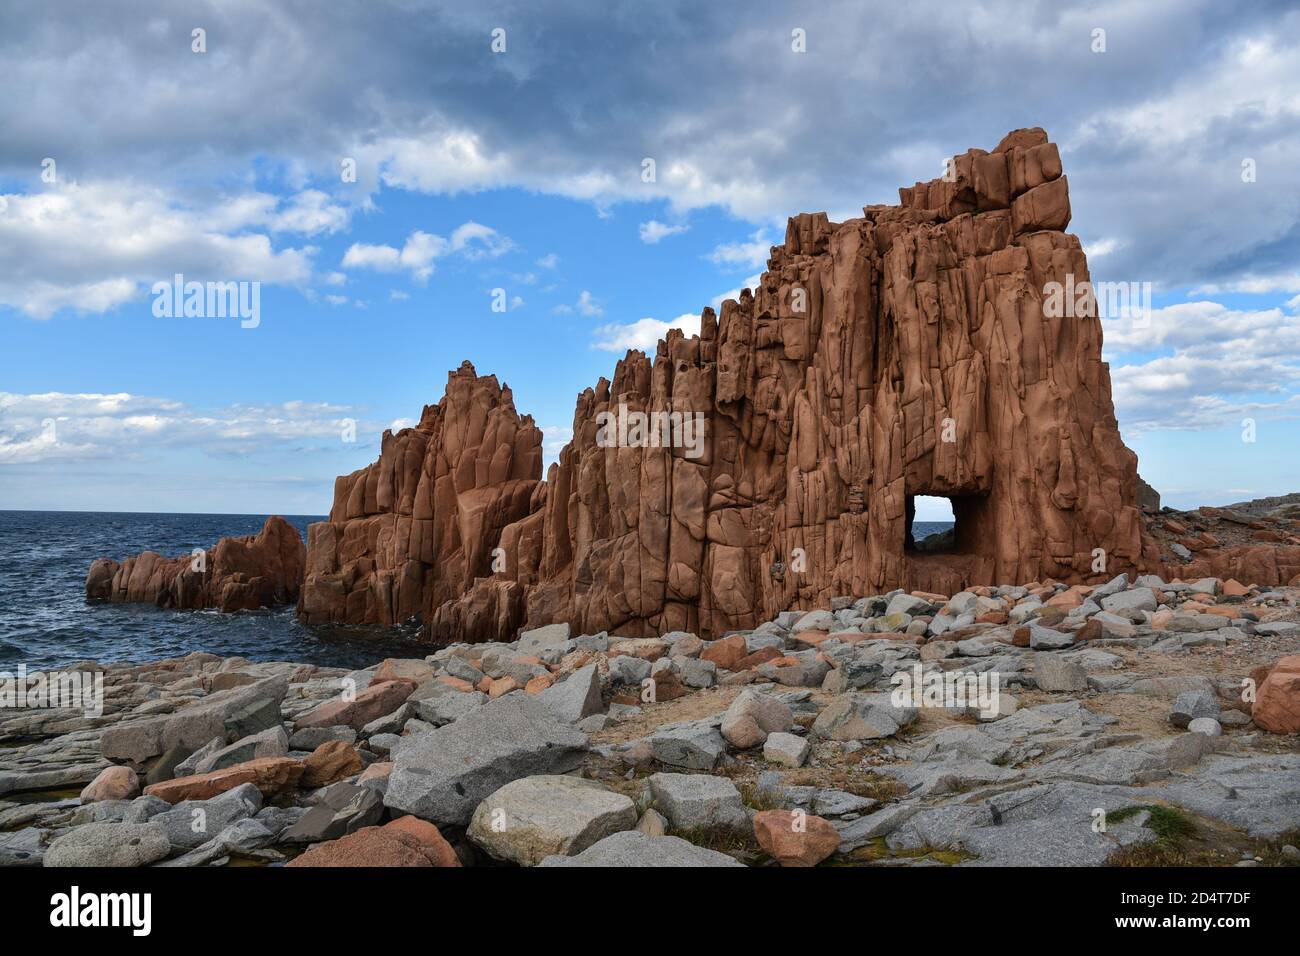 Red rocks of Sardinia Stock Photo